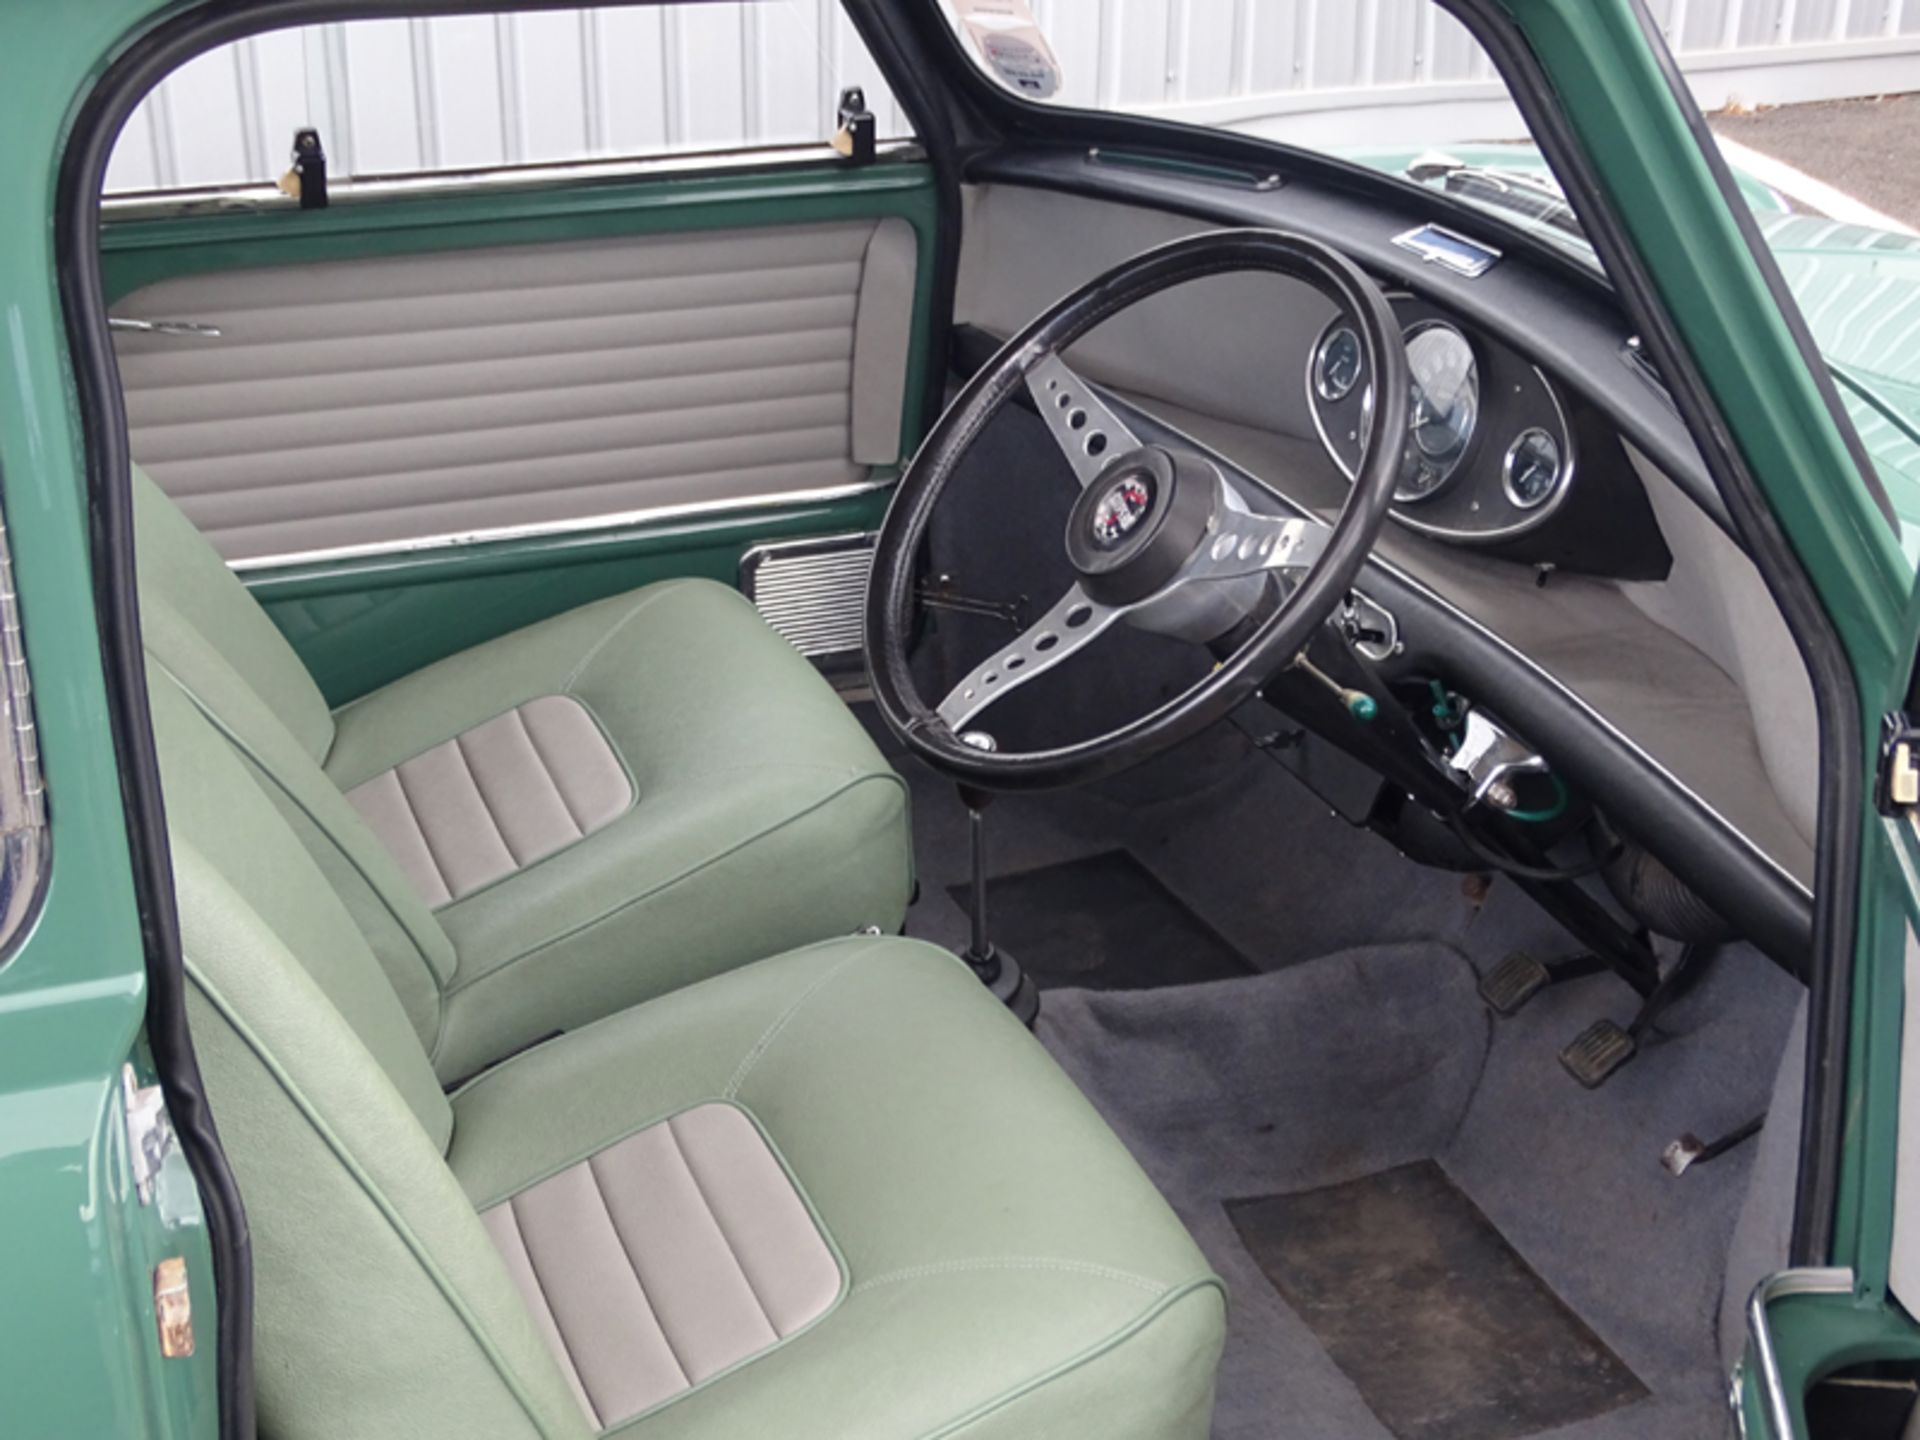 1966 Austin Mini Cooper S - Image 5 of 9